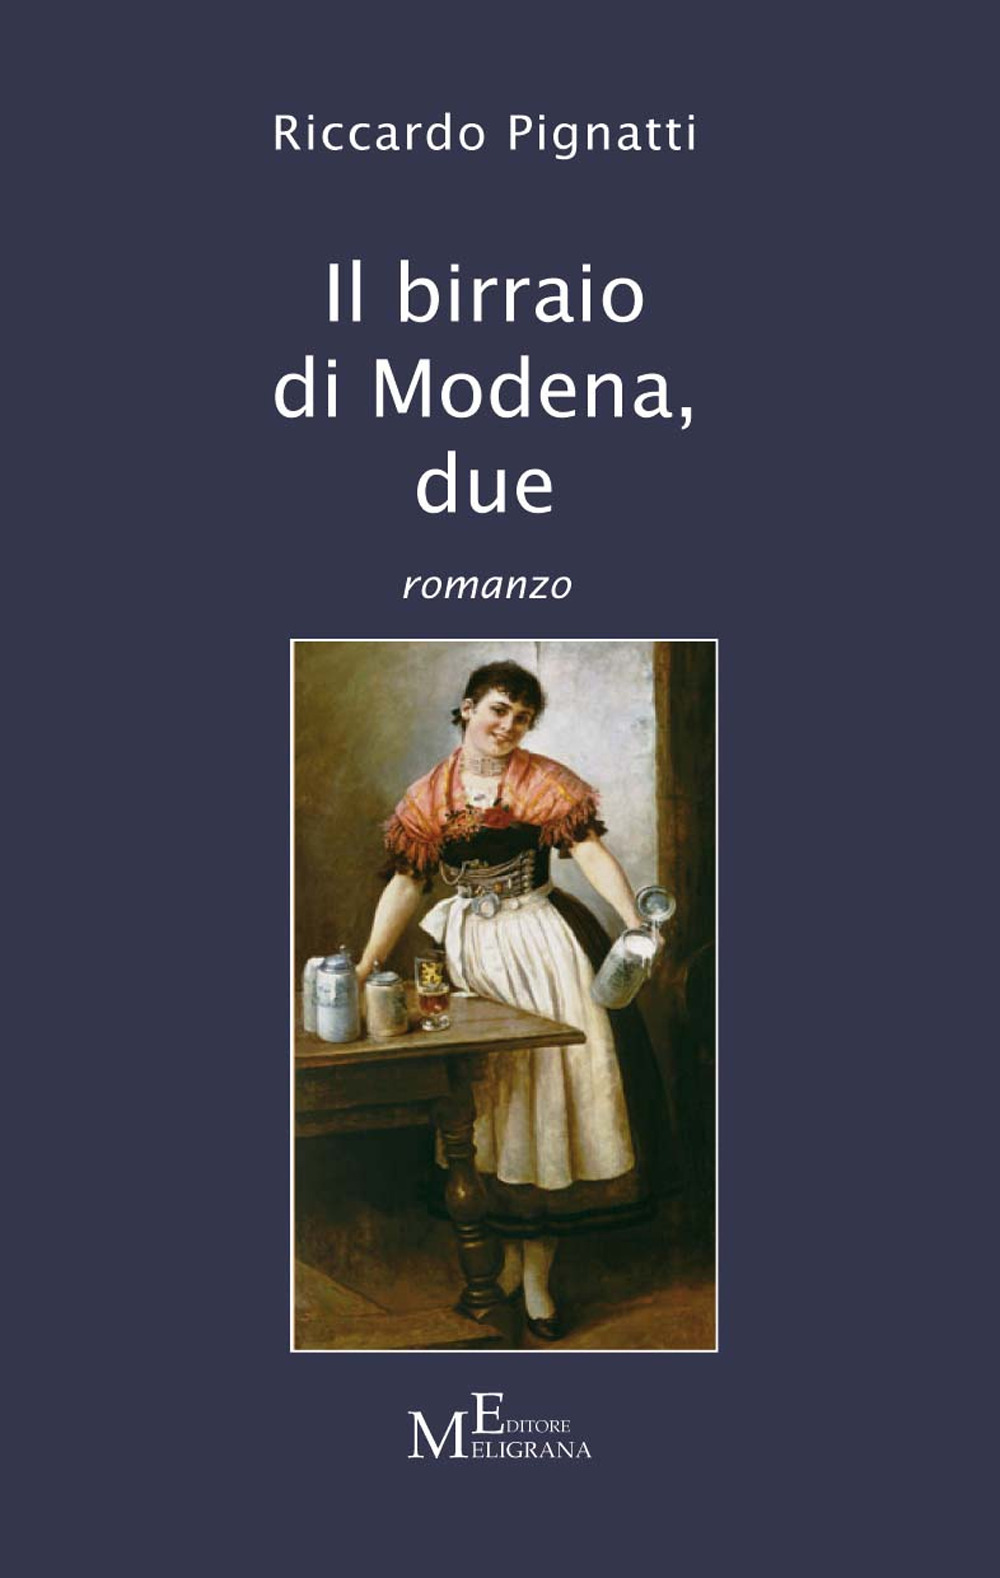 Il birraio di Modena. Vol. 2